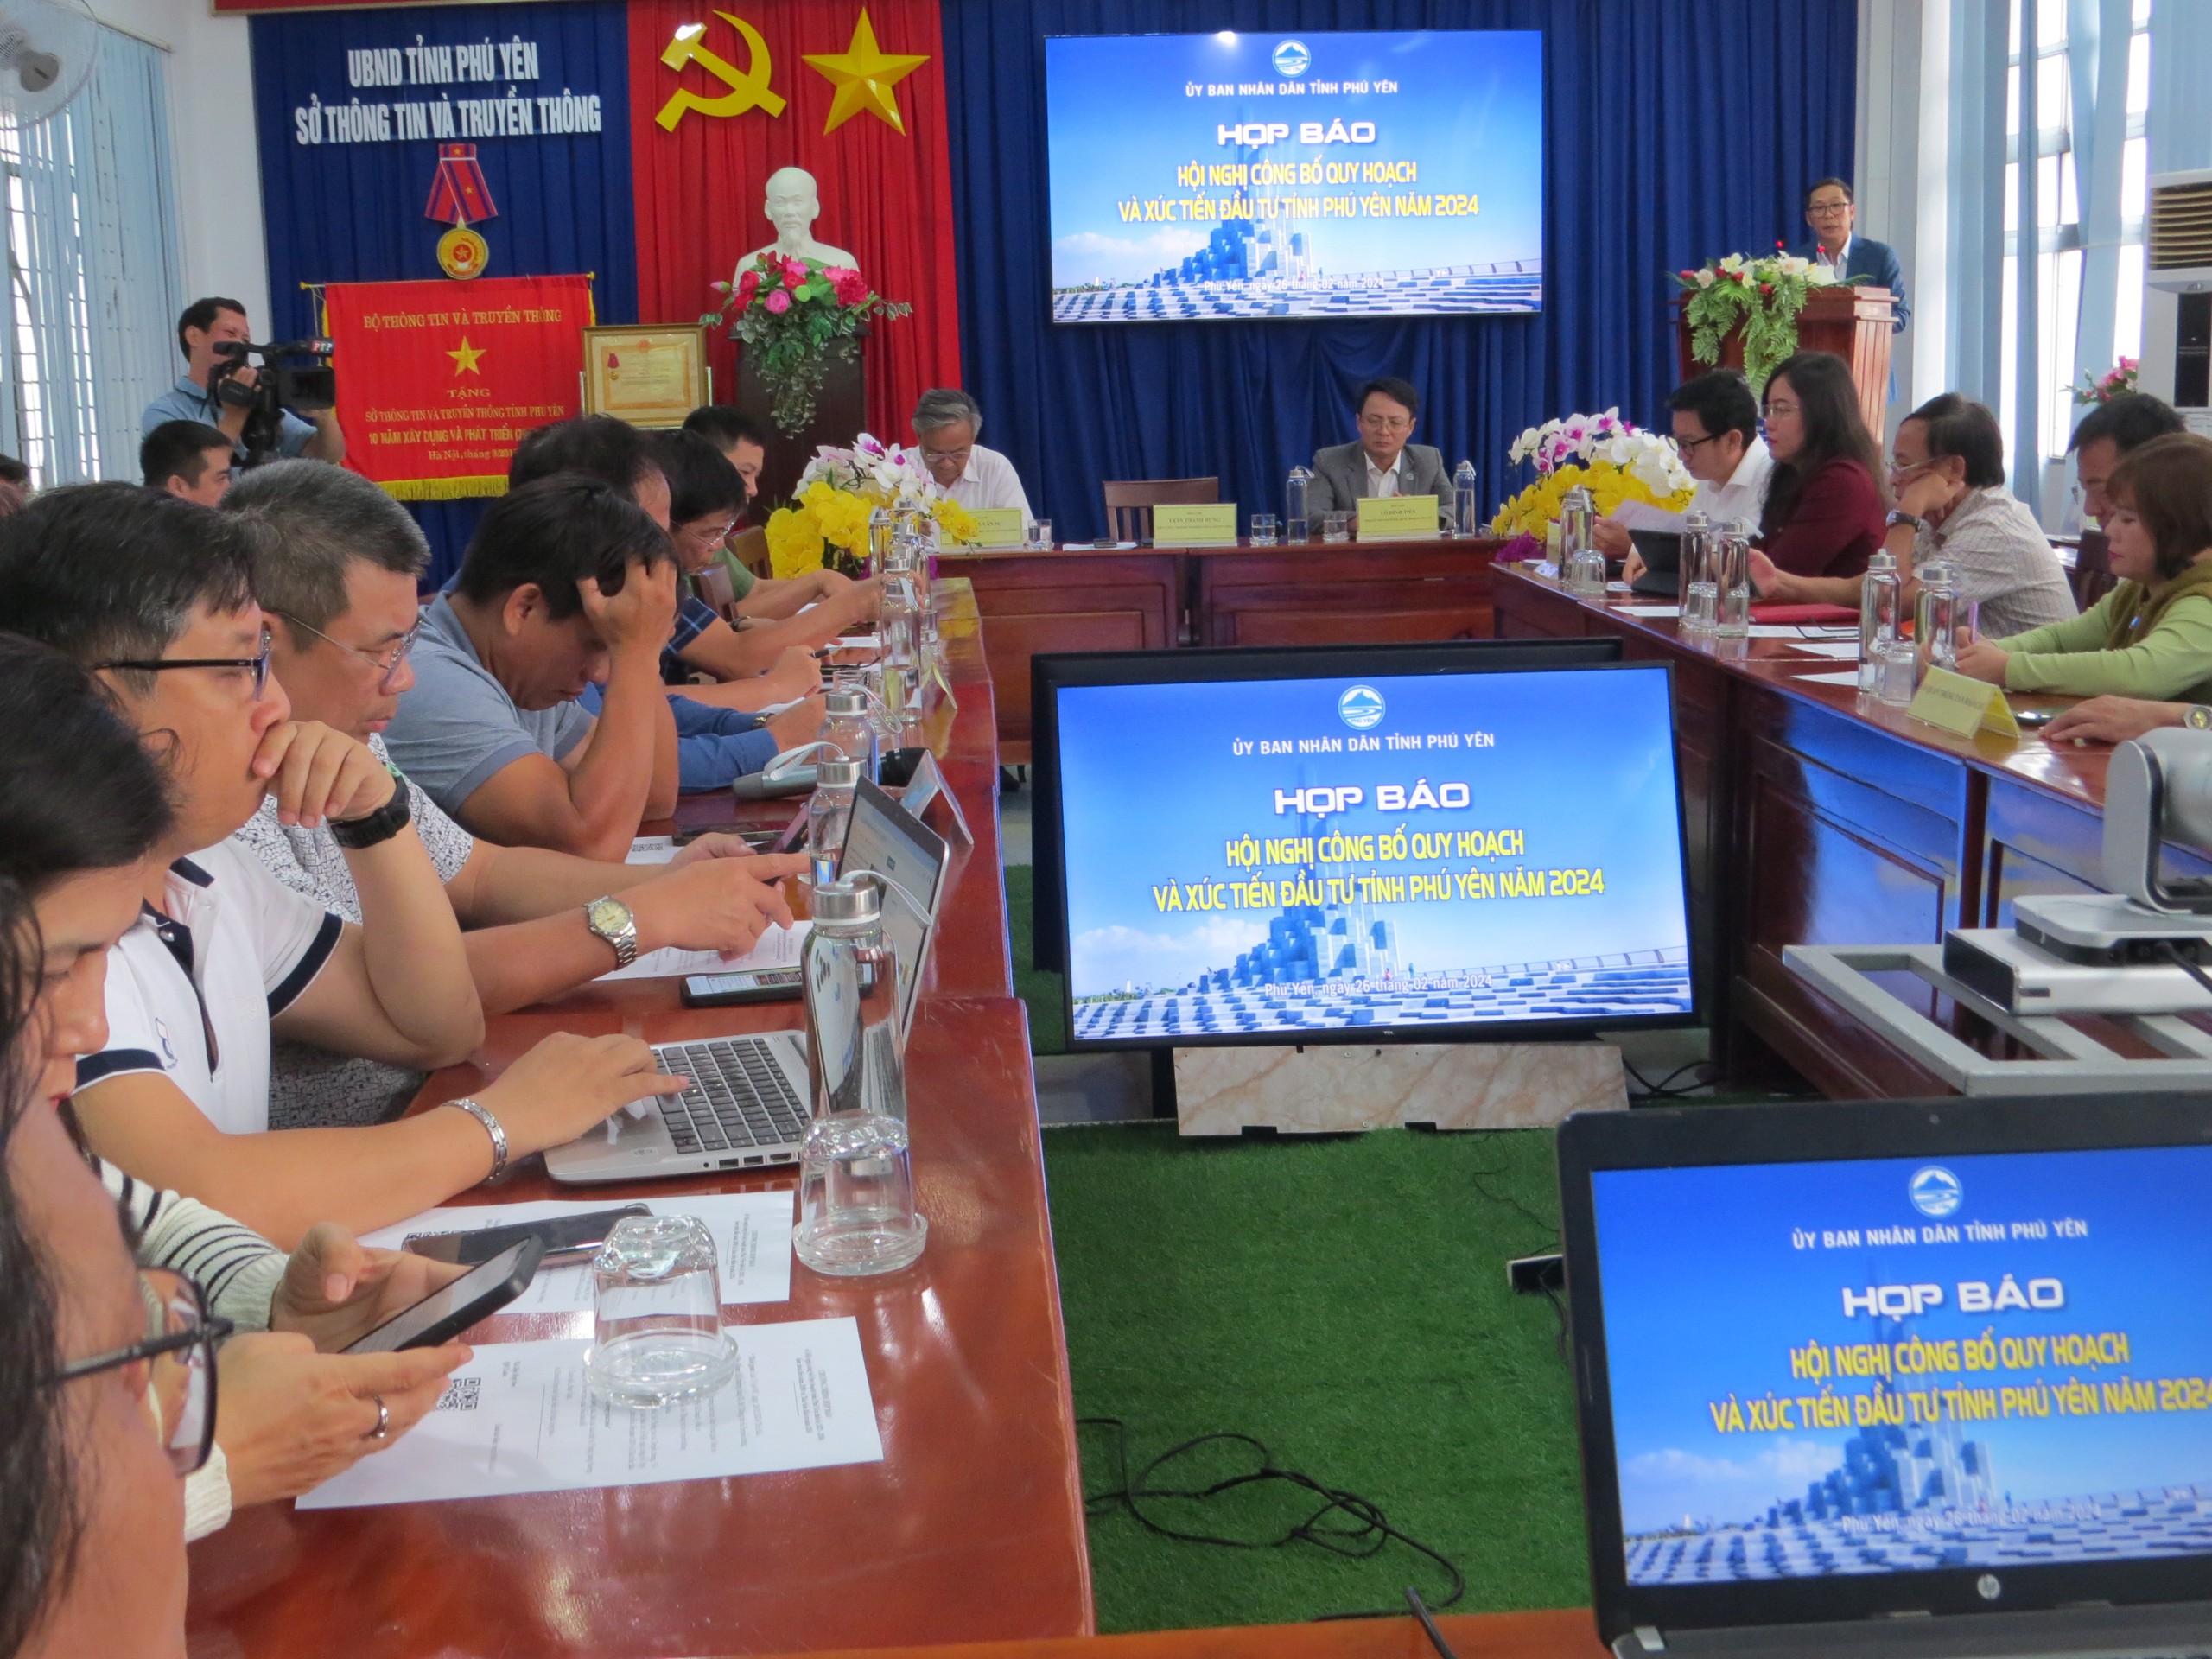 Họp báo hội nghị công bố quy hoạch và xúc tiến đầu tư tỉnh Phú Yên 2024- Ảnh 1.